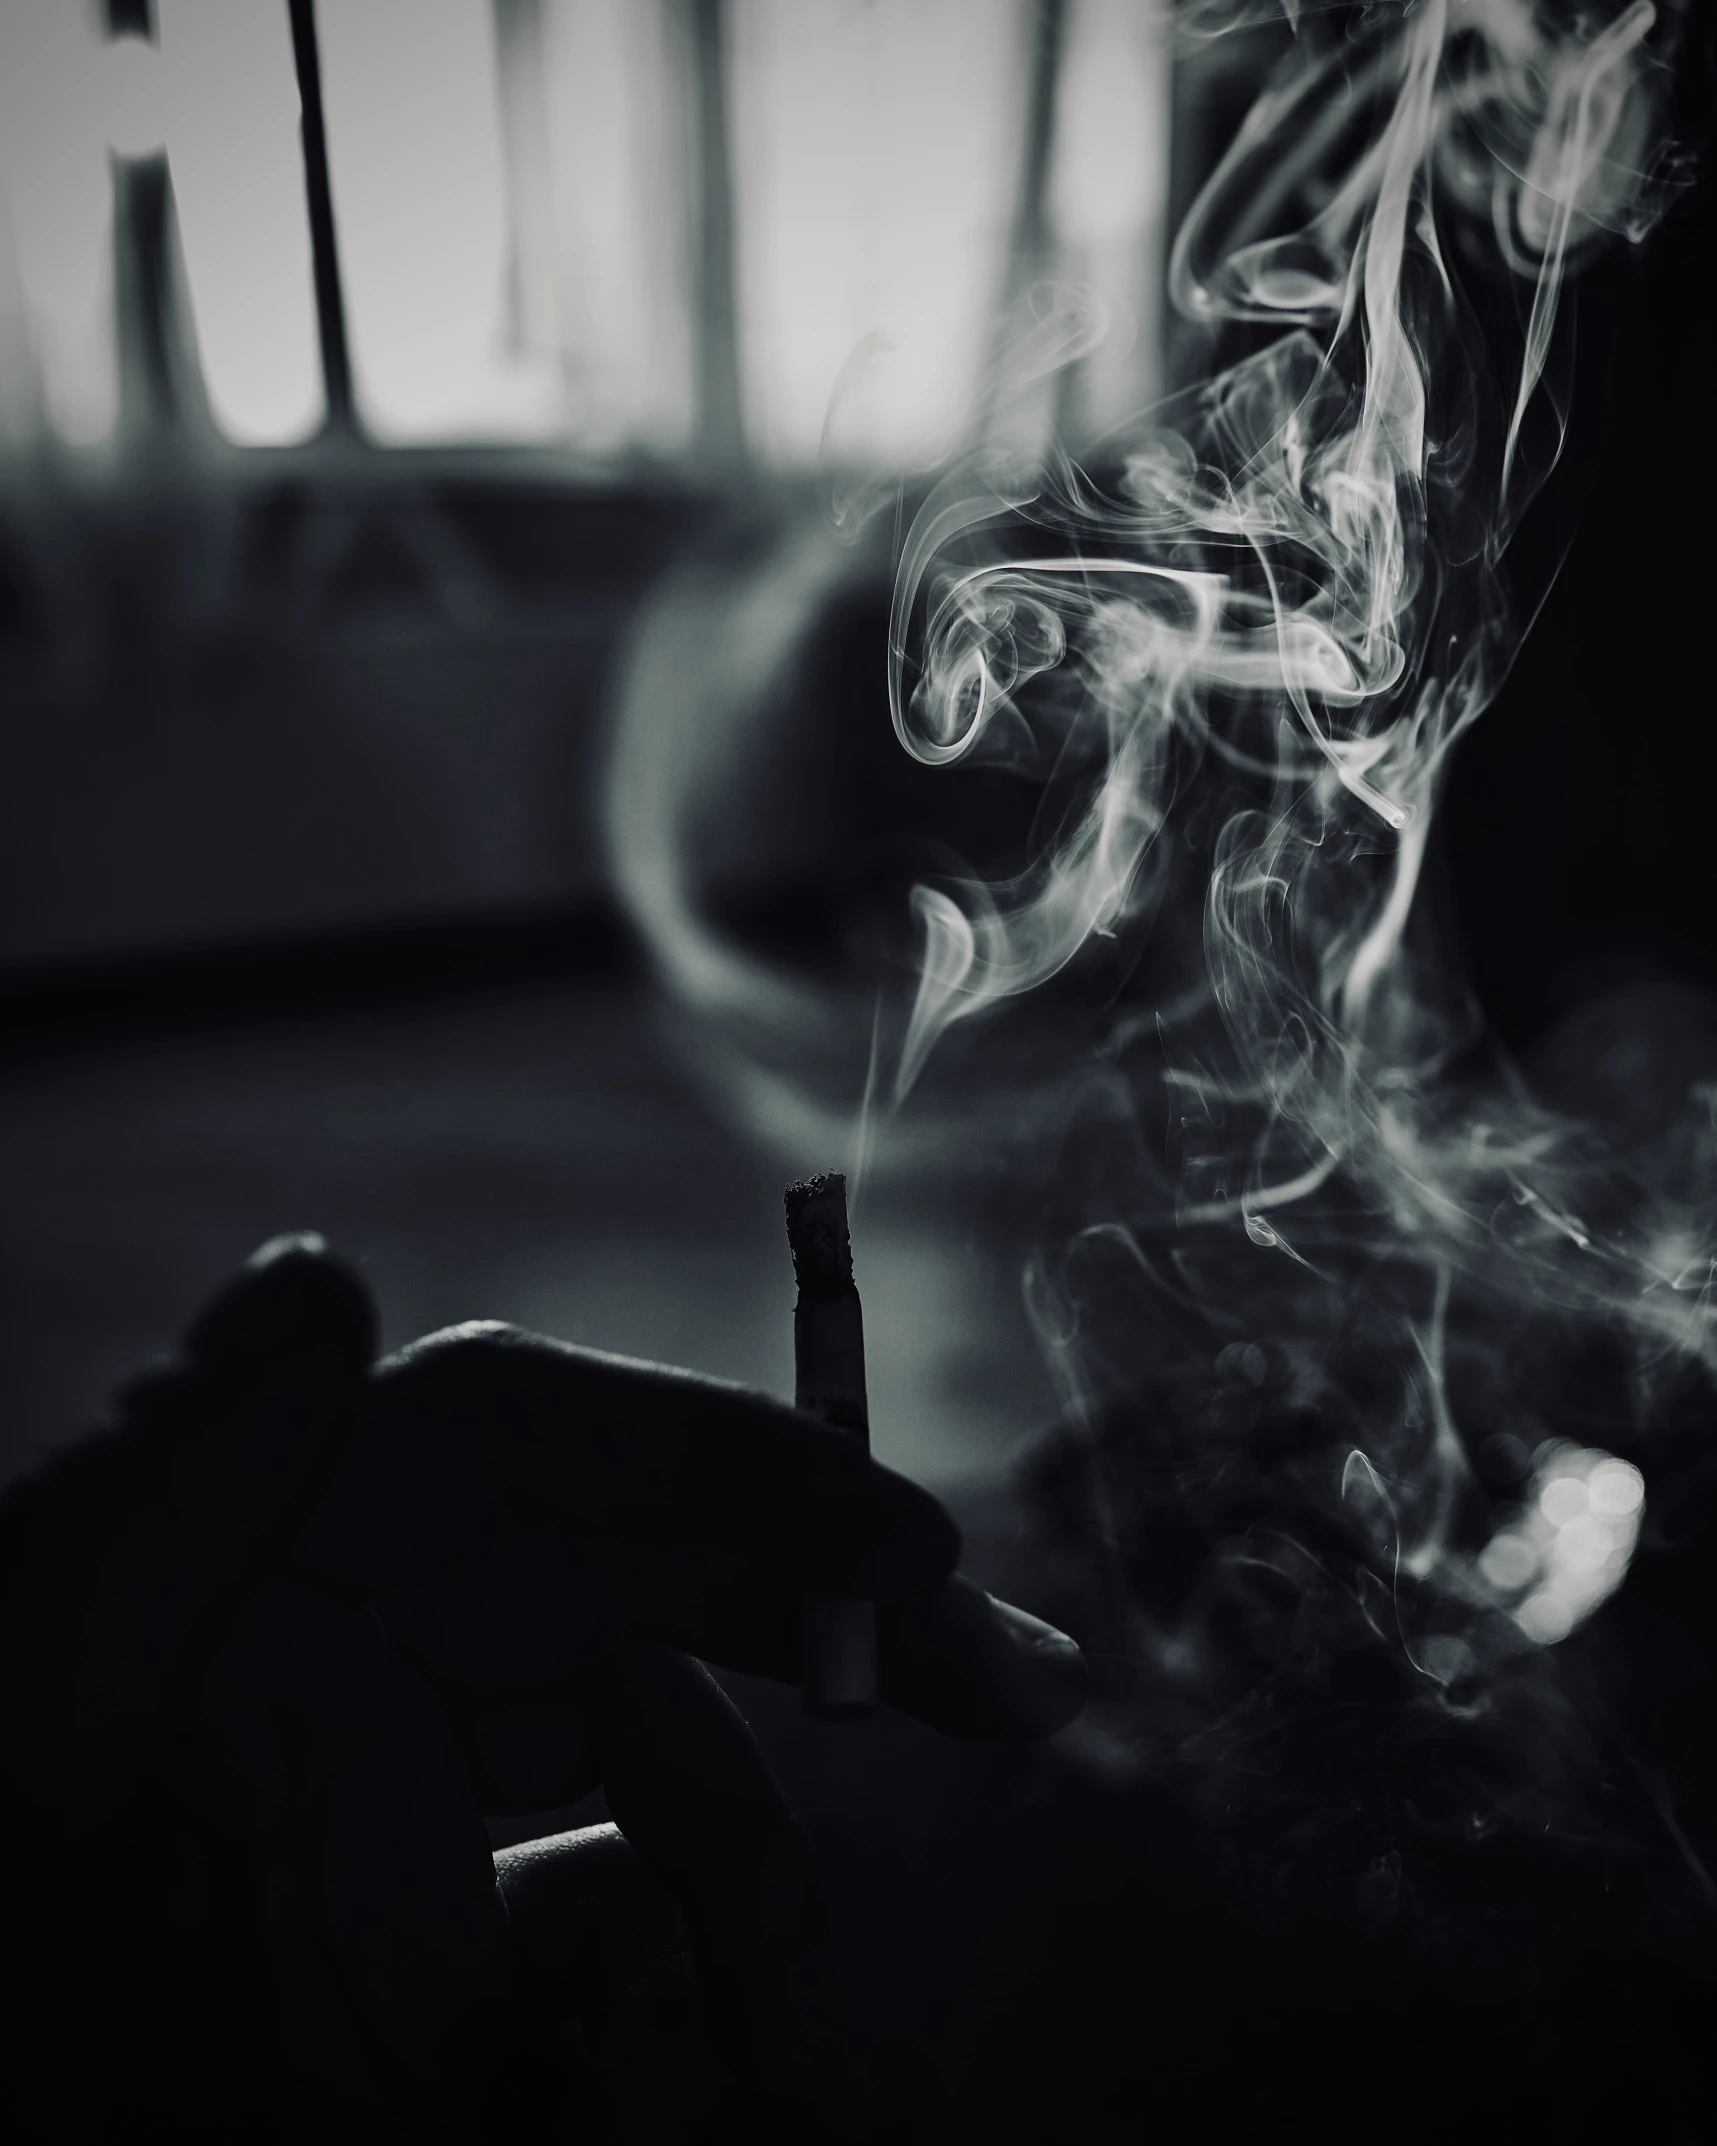 a hand holding a smoking stick full of smoke